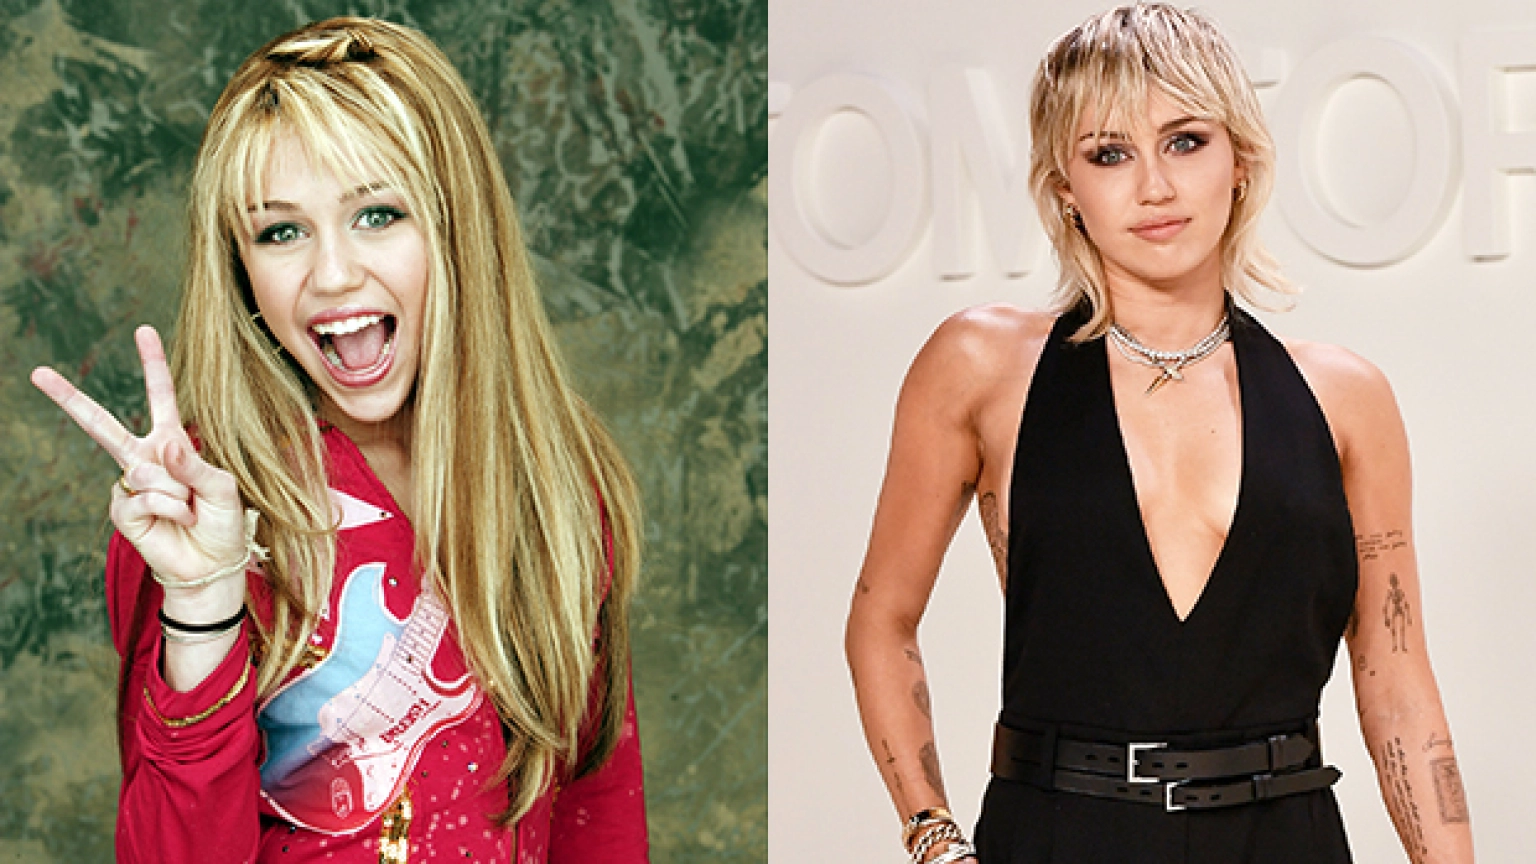 Miley Cyrus dans le rôle d'Hannah Montana dans une longue perruque blonde, souriante avec la bouche ouverte et le signe de la paix. Miley Cyrus maintenant avec des cheveux courts blonds platine et un haut noir décolleté montrant ses tatouages.